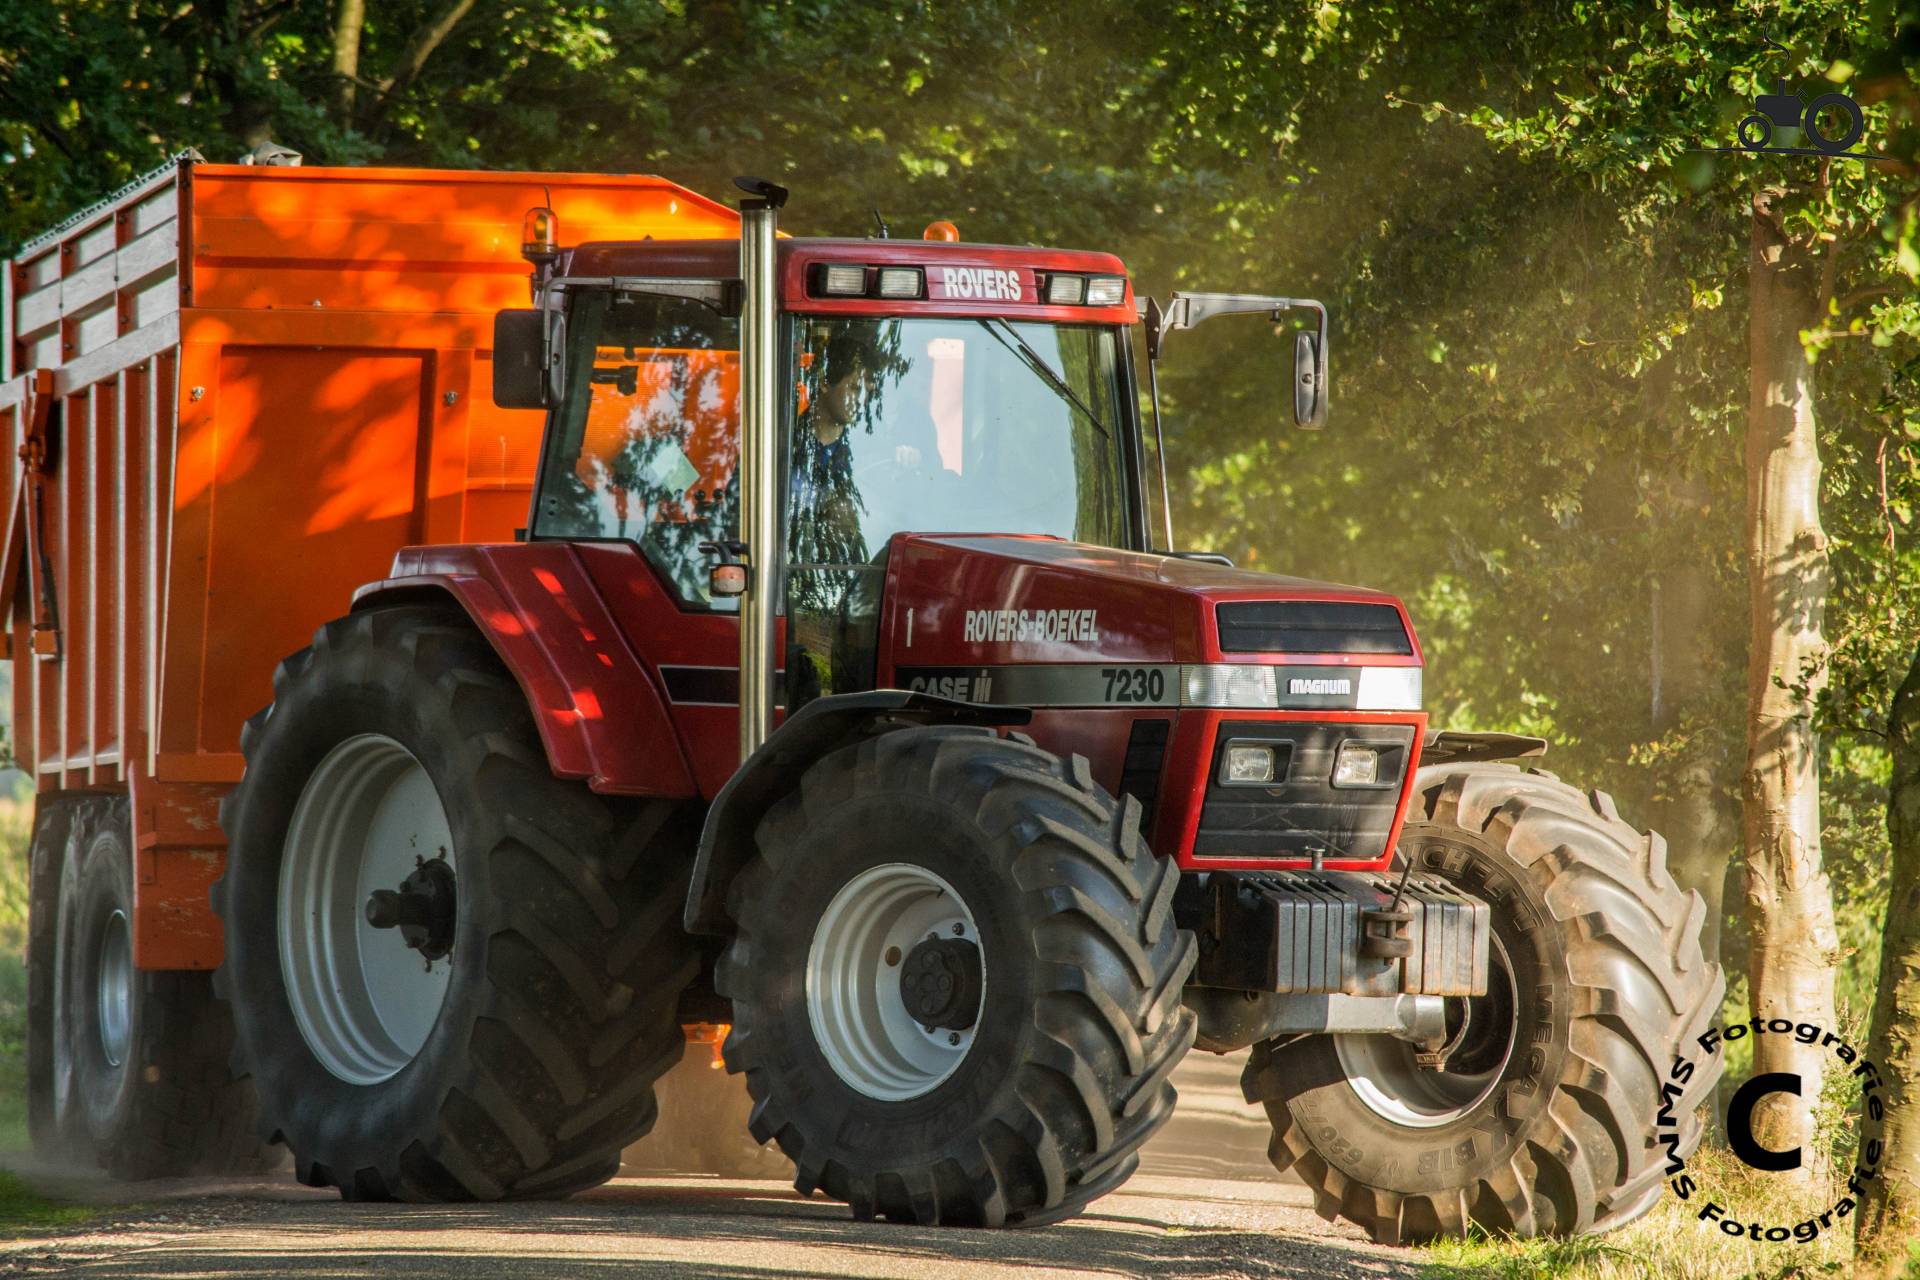 traktor-case-ih-7230-magnum